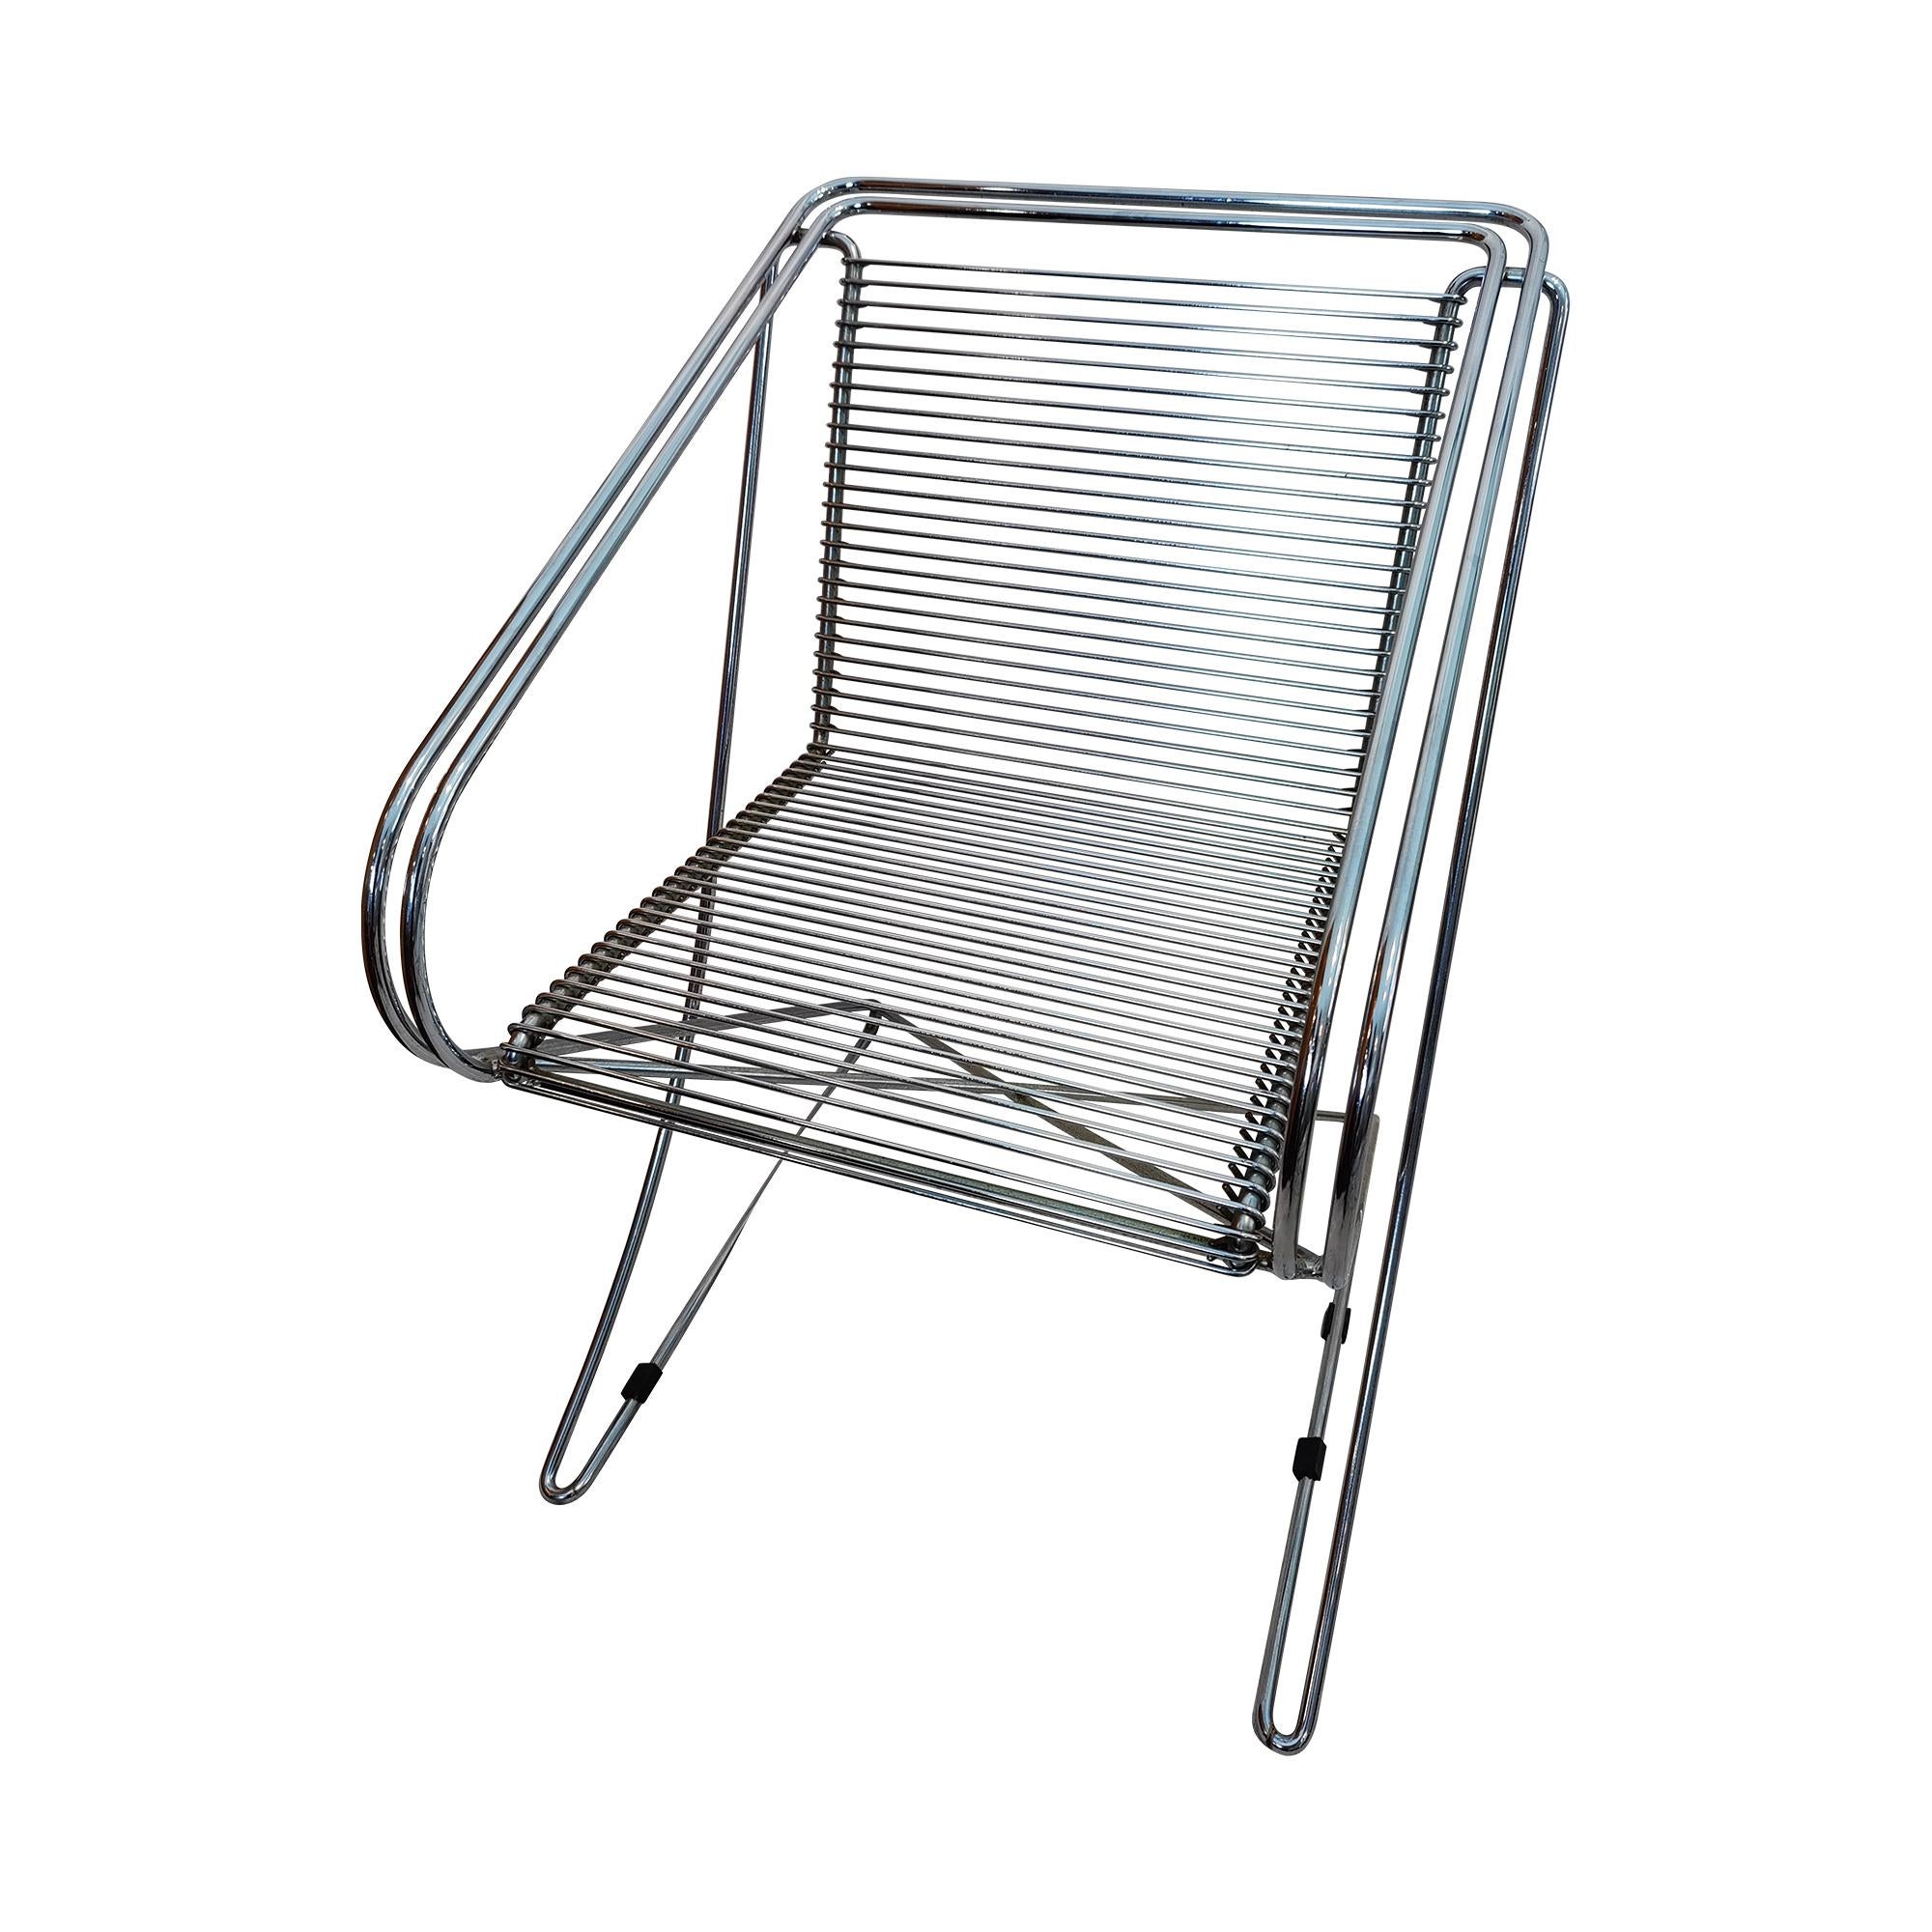 Wir stellen die atemberaubenden Kreuzschwinger Sessel des renommierten Designers Till Behrens vor! Diese exquisiten Stühle sind die perfekte Kombination aus Form und Funktion und bieten sowohl Komfort als auch Stil.

Jeder Stuhl wird mit Präzision